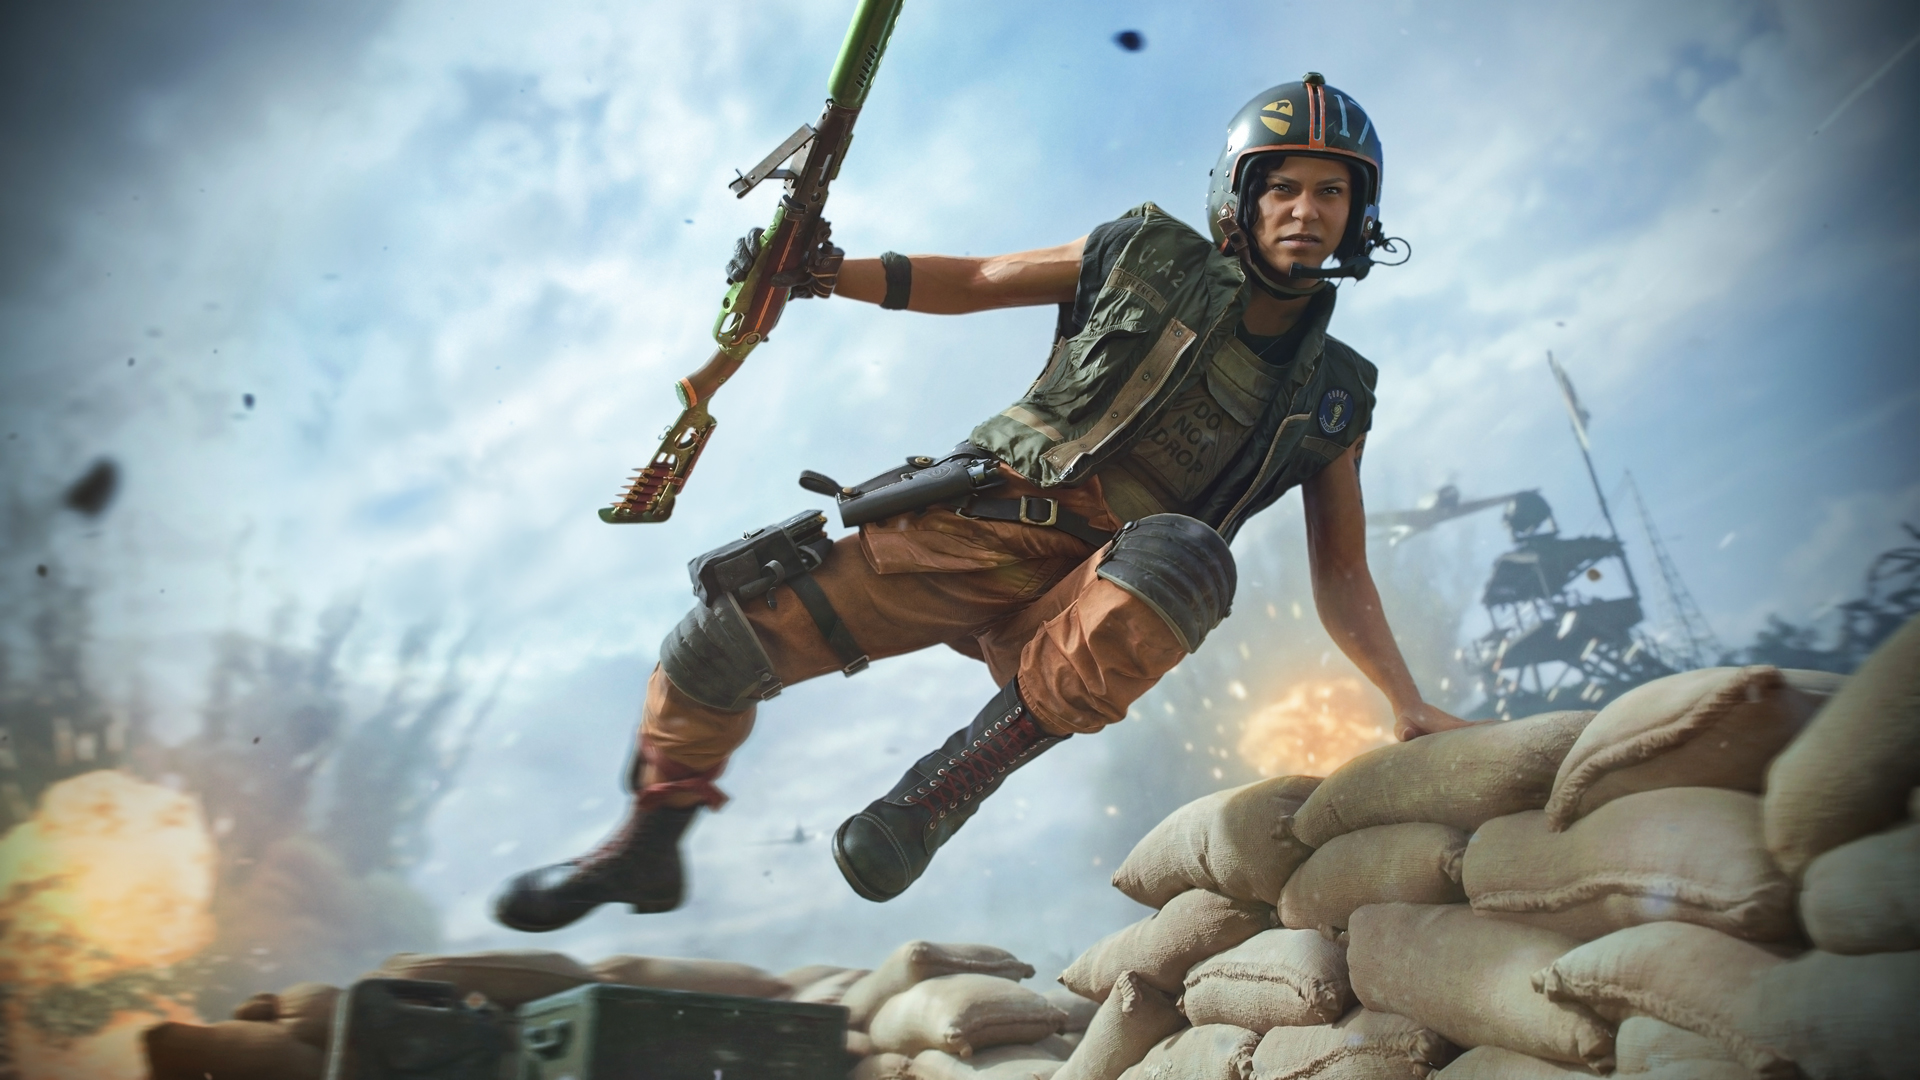 Женщина-оперативник Флоренс Картер держит винтовку и перепрыгивает через стопку мешков с песком в боевой зоне Call of Duty